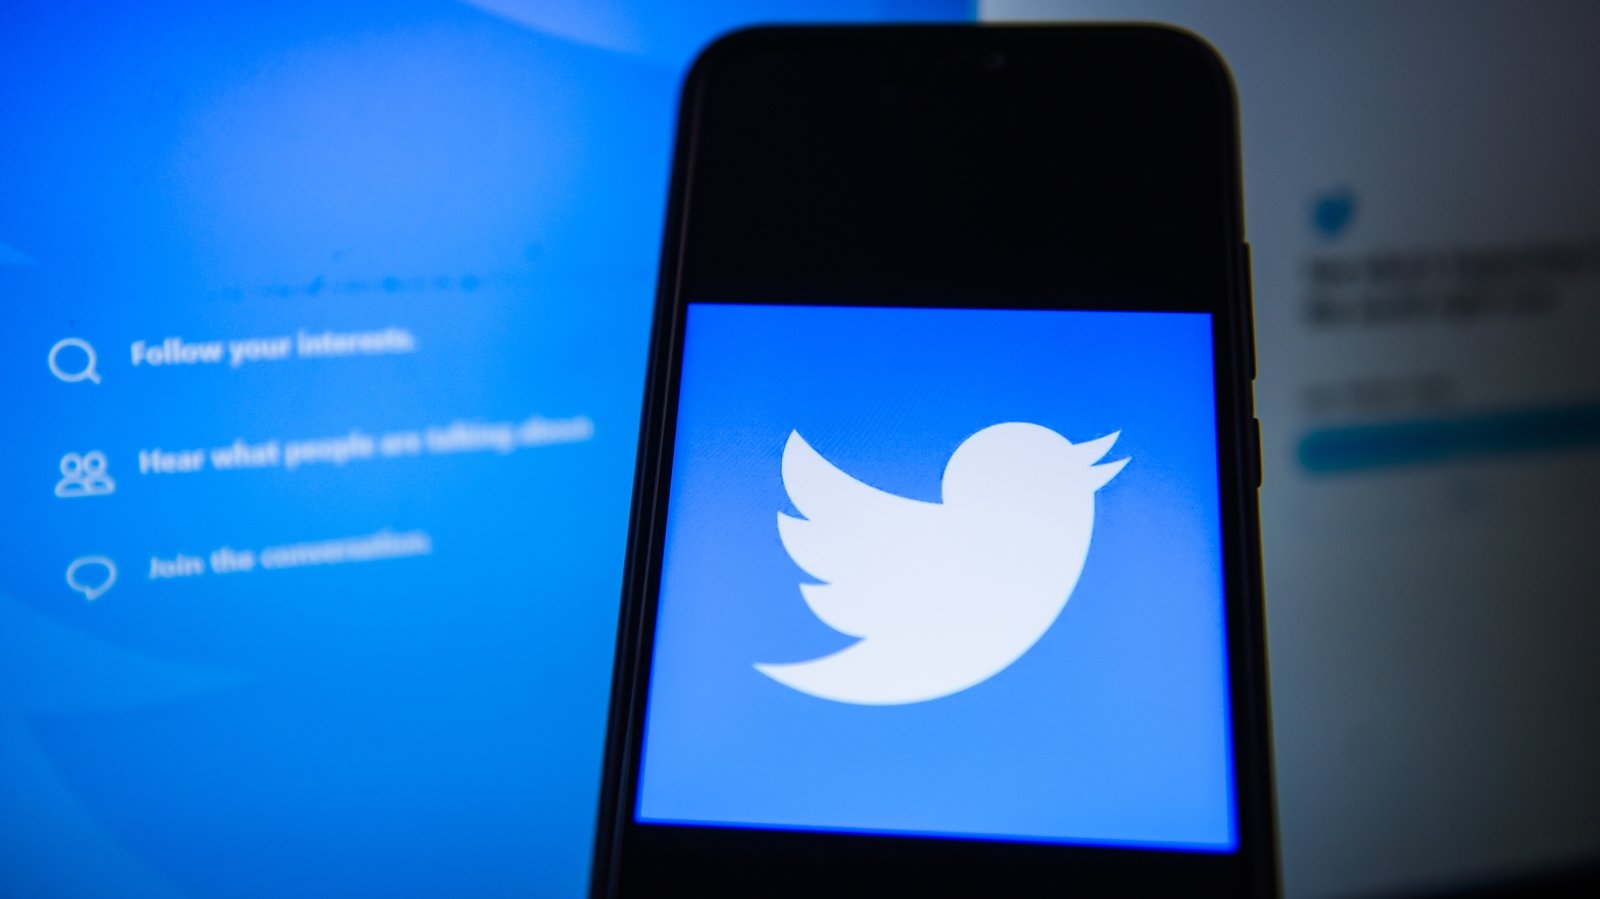 Twitter service re-established after global blockade

